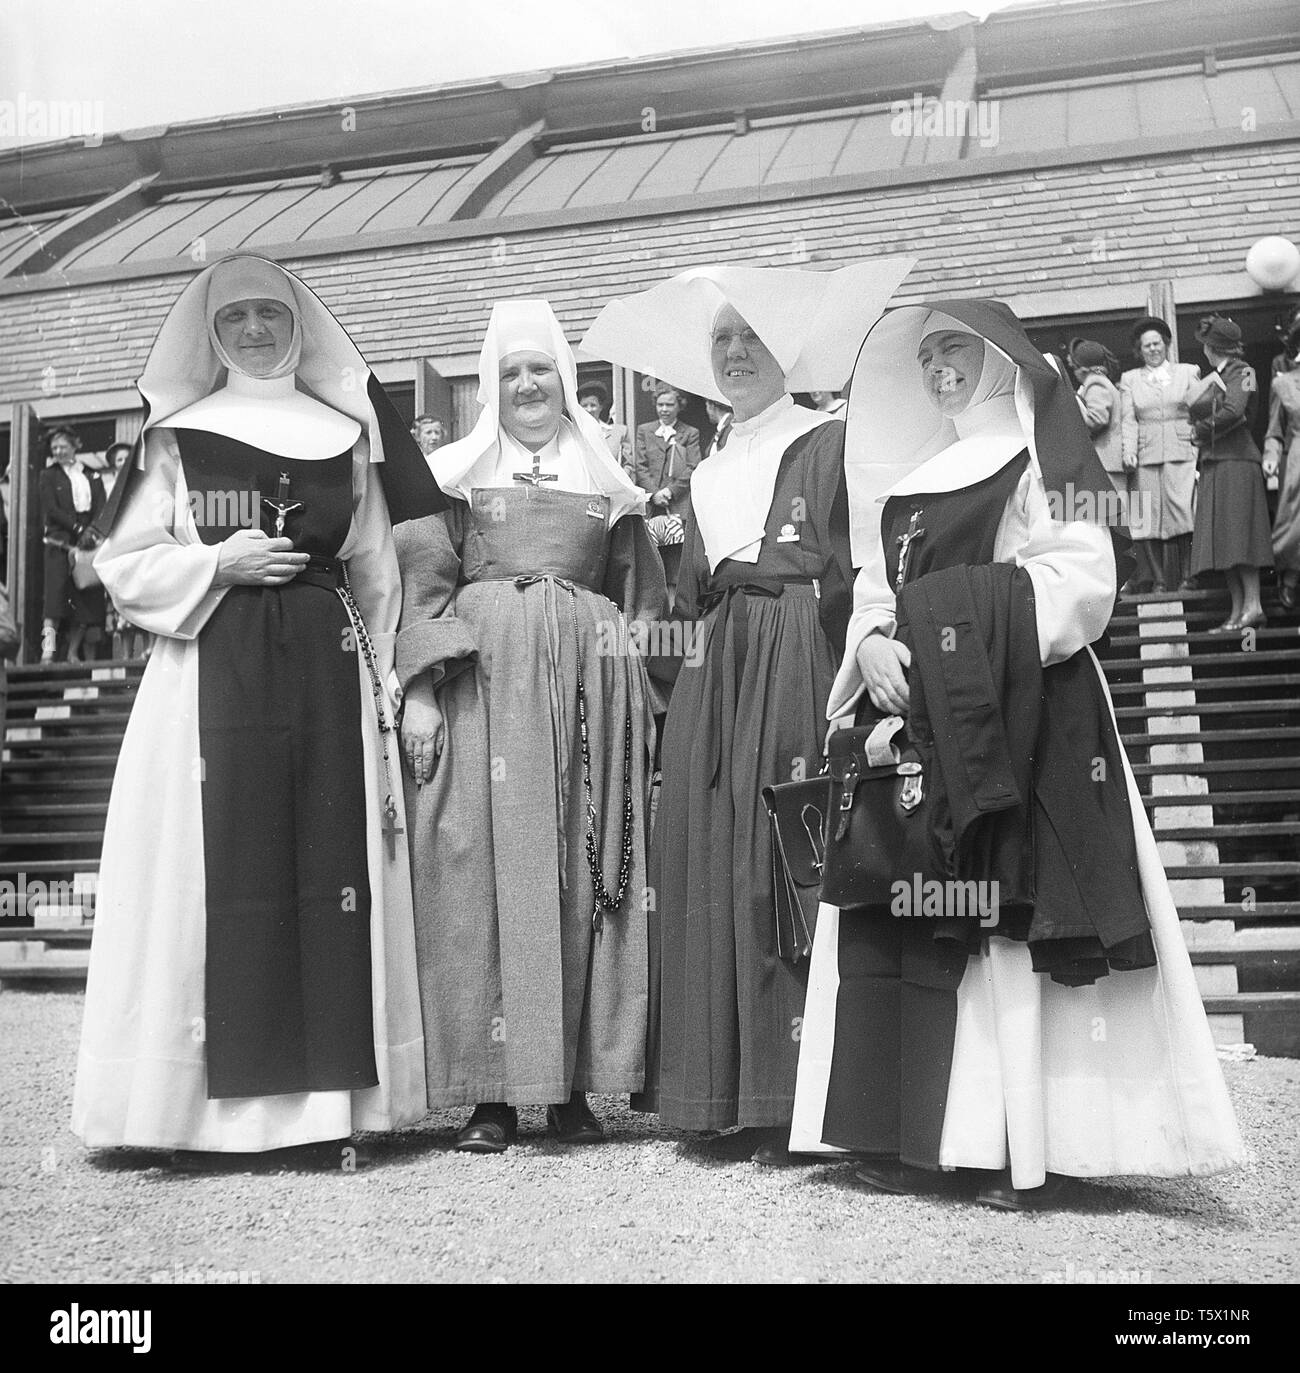 Nonnen. Eine Gruppe von vier Nonnen in ihrem typischen Kleidung angezogen. Schweden 1948. Foto Kristoffersson ref AR 76-2 Stockfoto